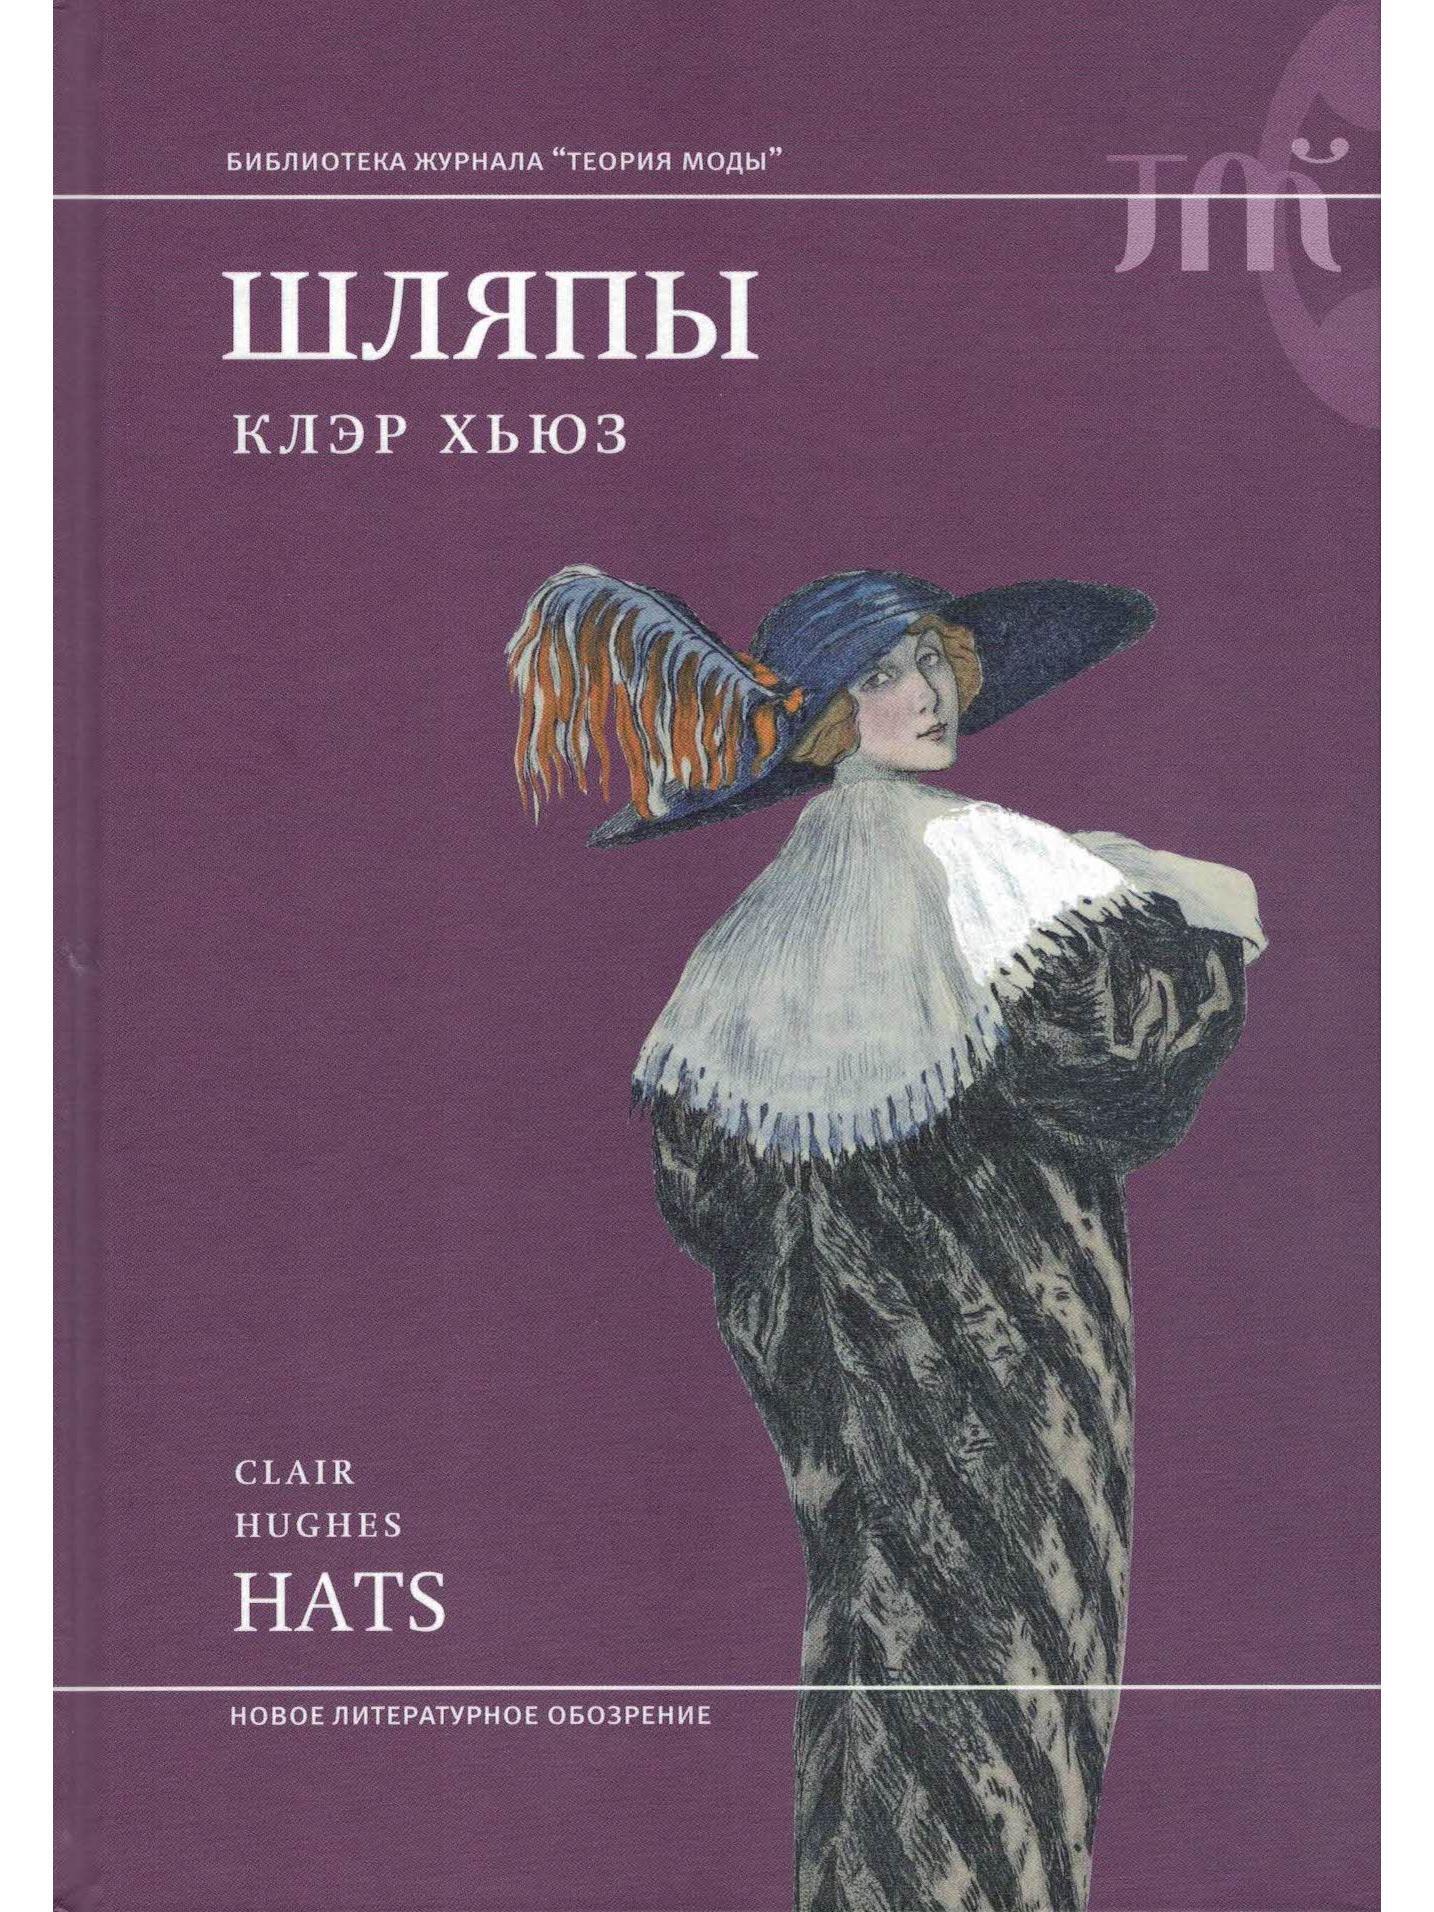 Мужские шляпы 18 века – История шляпы в России | Энциклопедия моды